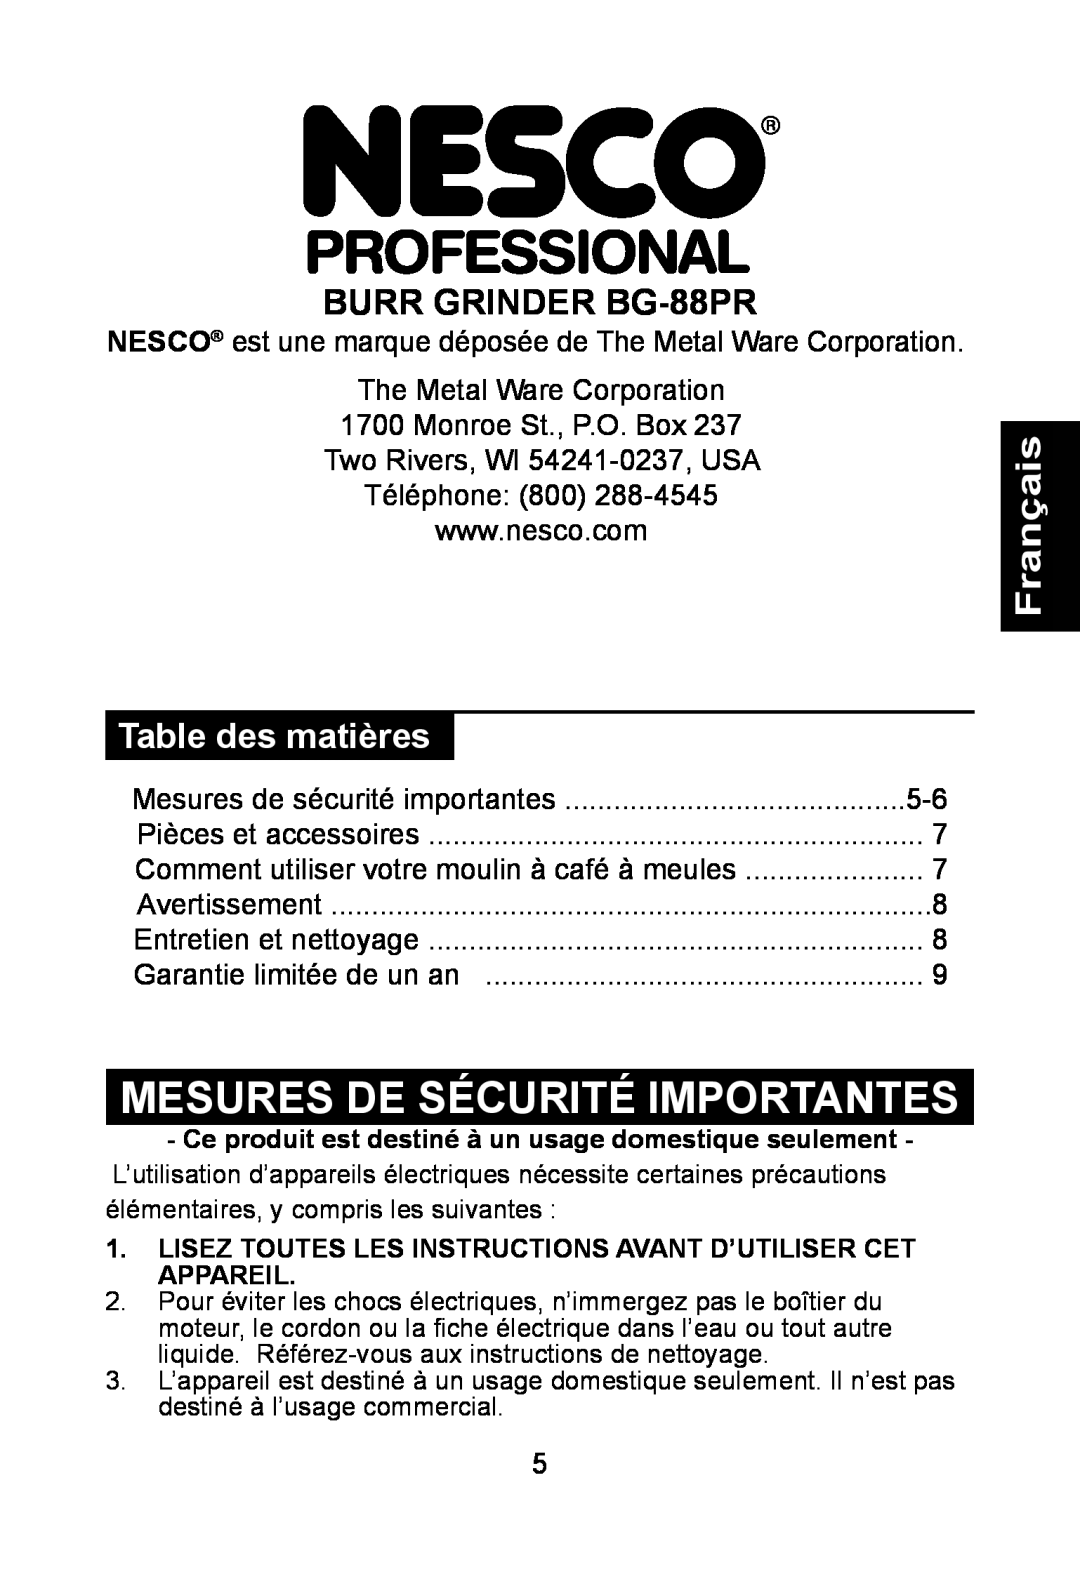 Nesco manual Français, Mesures De Sécurité Importantes, BURR GRINDER BG-88PR, Table des matières 